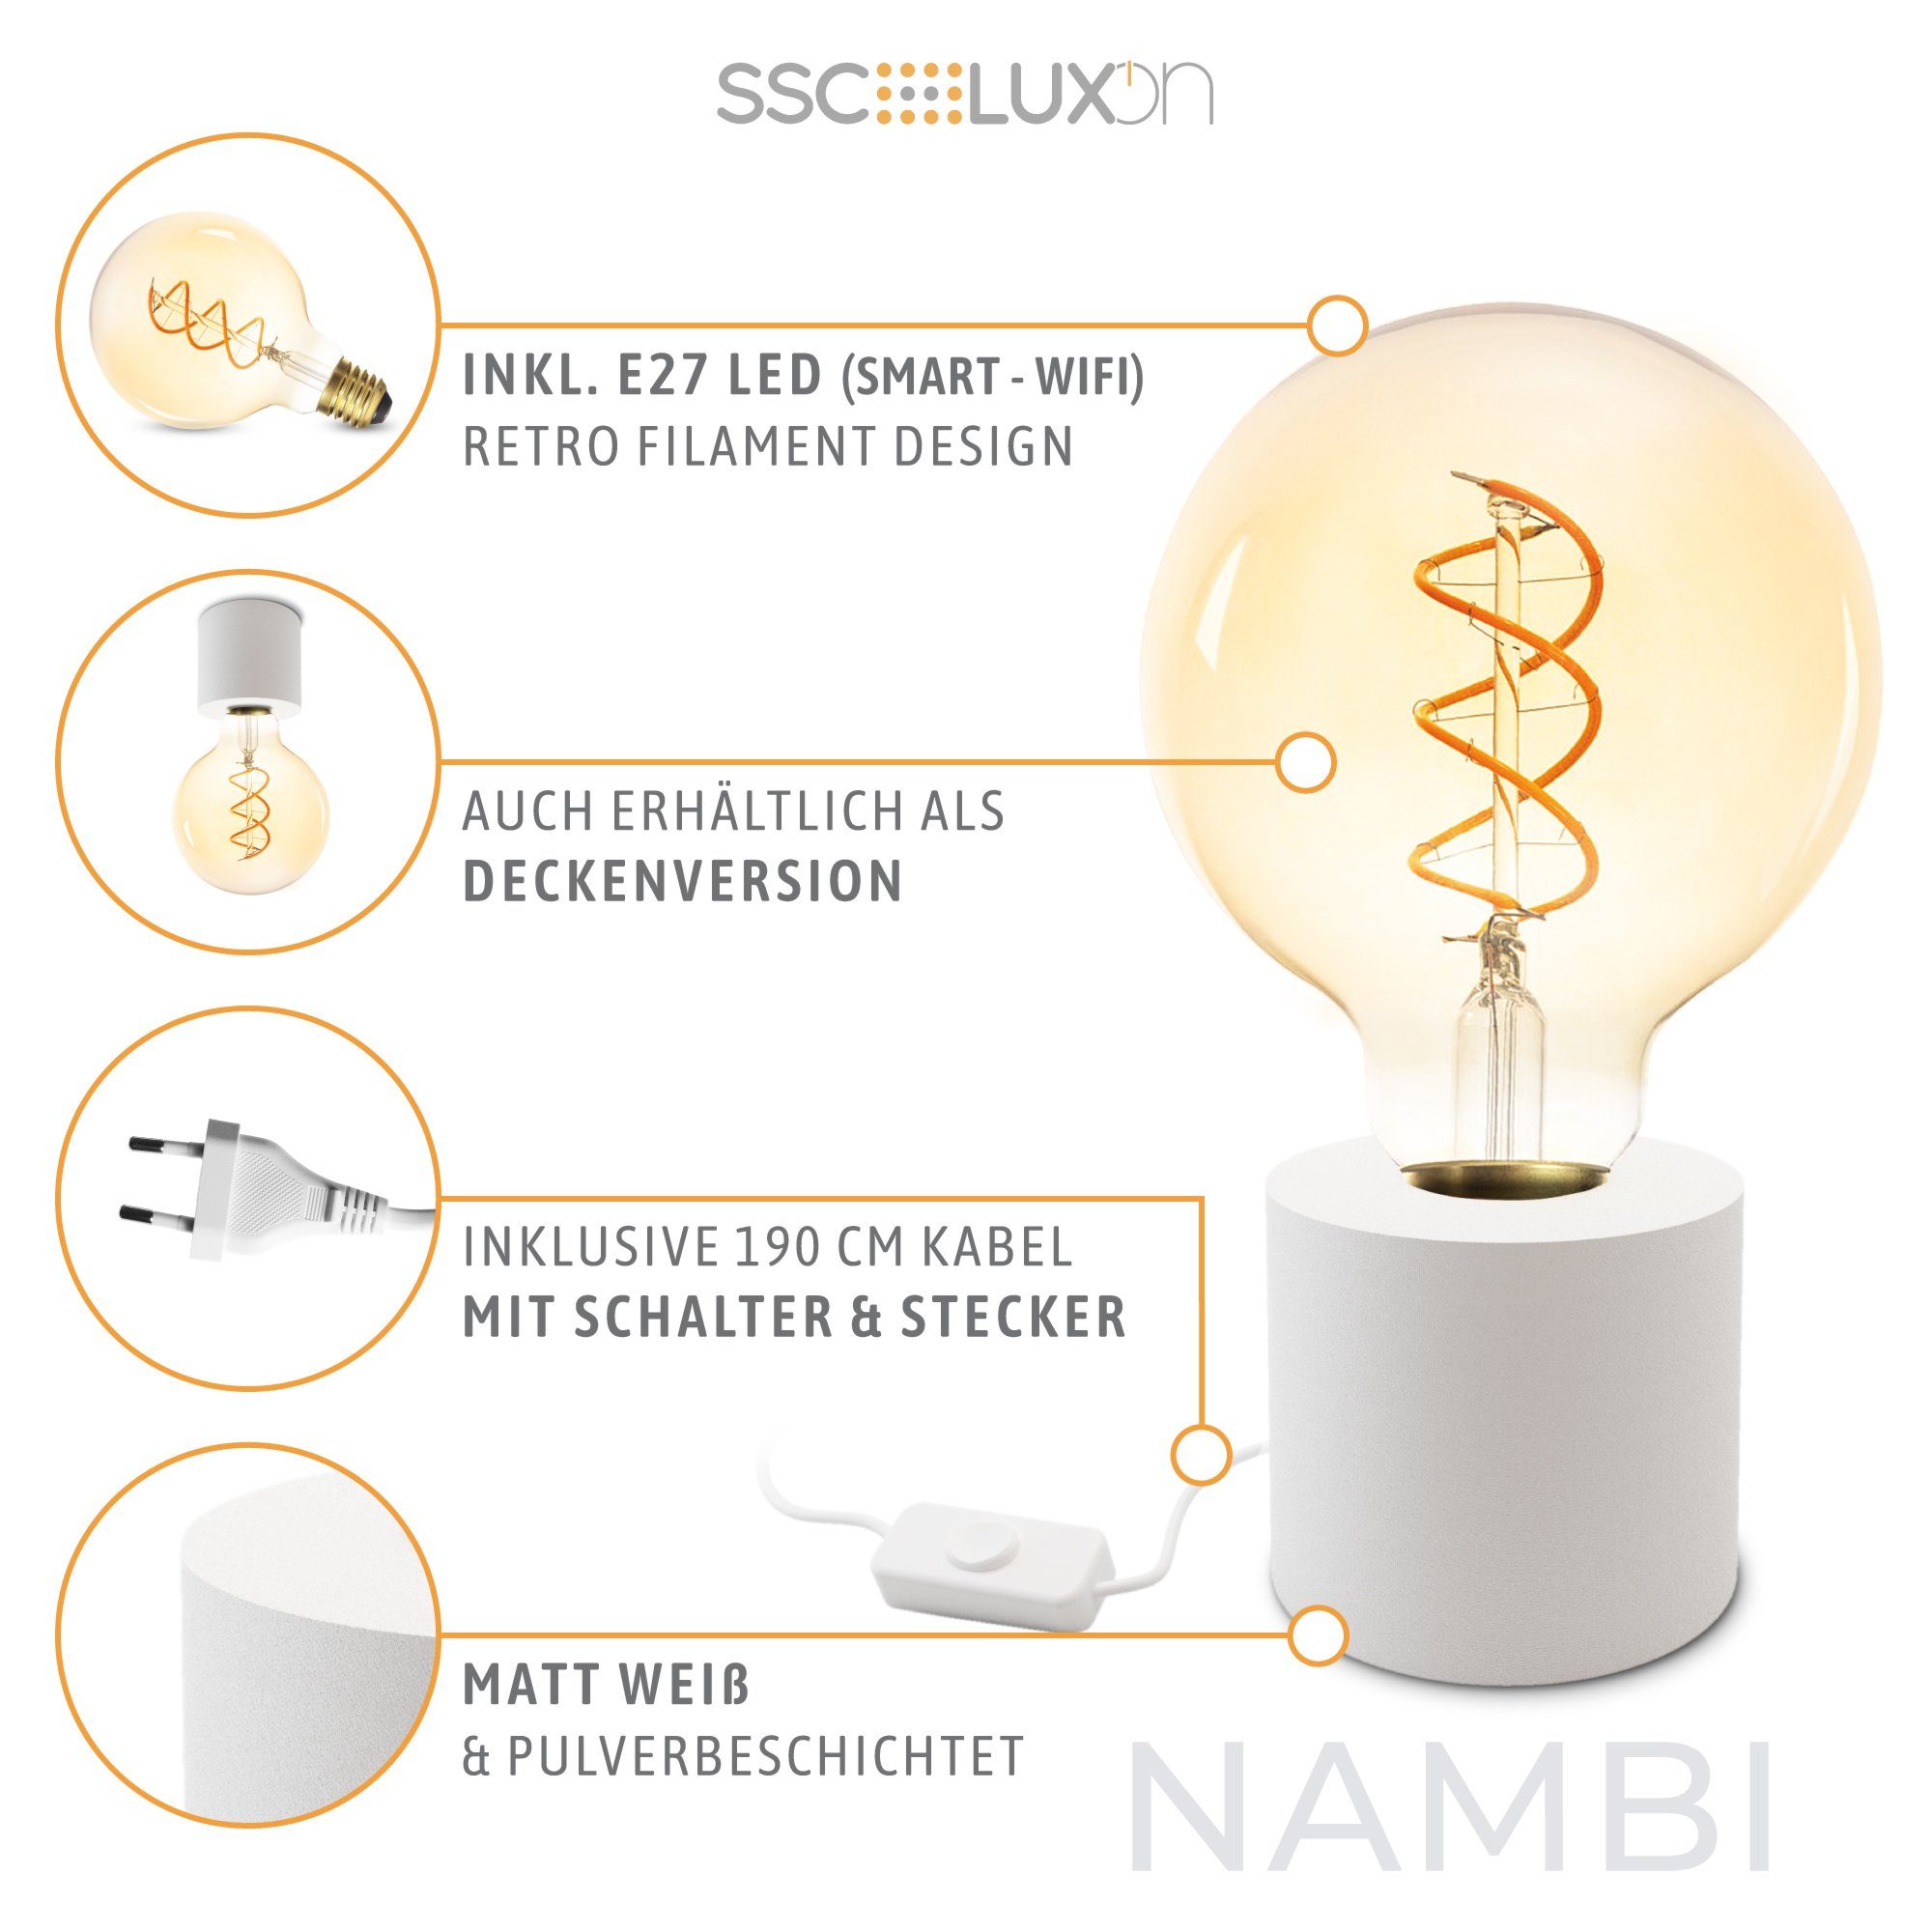 NAMBI Stecker mit weiss LED Filament Tischleuchte Kabel SSC-LUXon mit Warmweiß & rund Bilderleuchte LED,